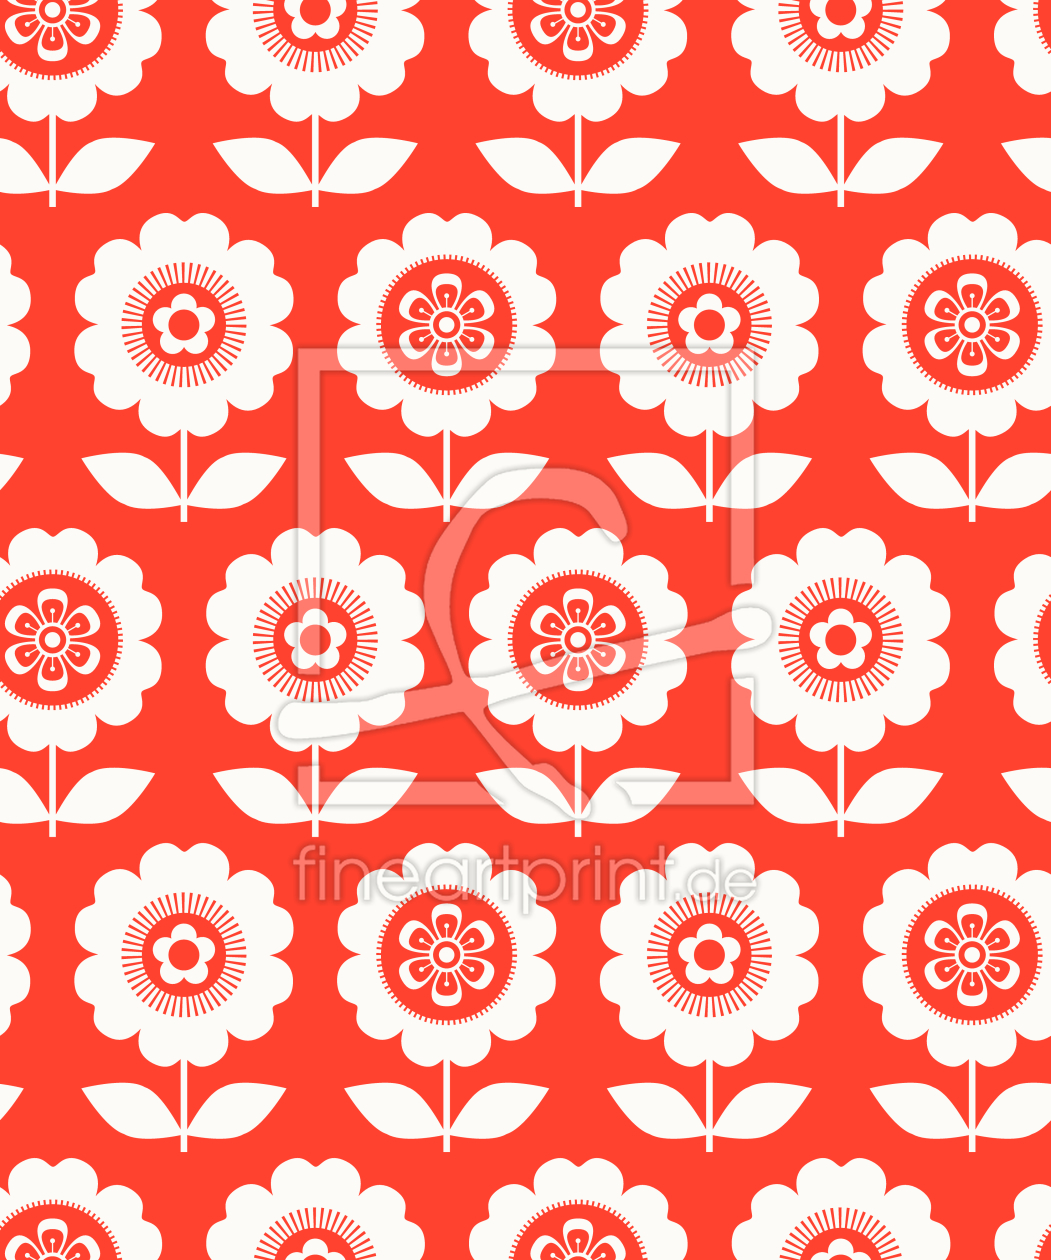 Bild-Nr.: 9015144 Sechziger Topfpflanze erstellt von patterndesigns-com